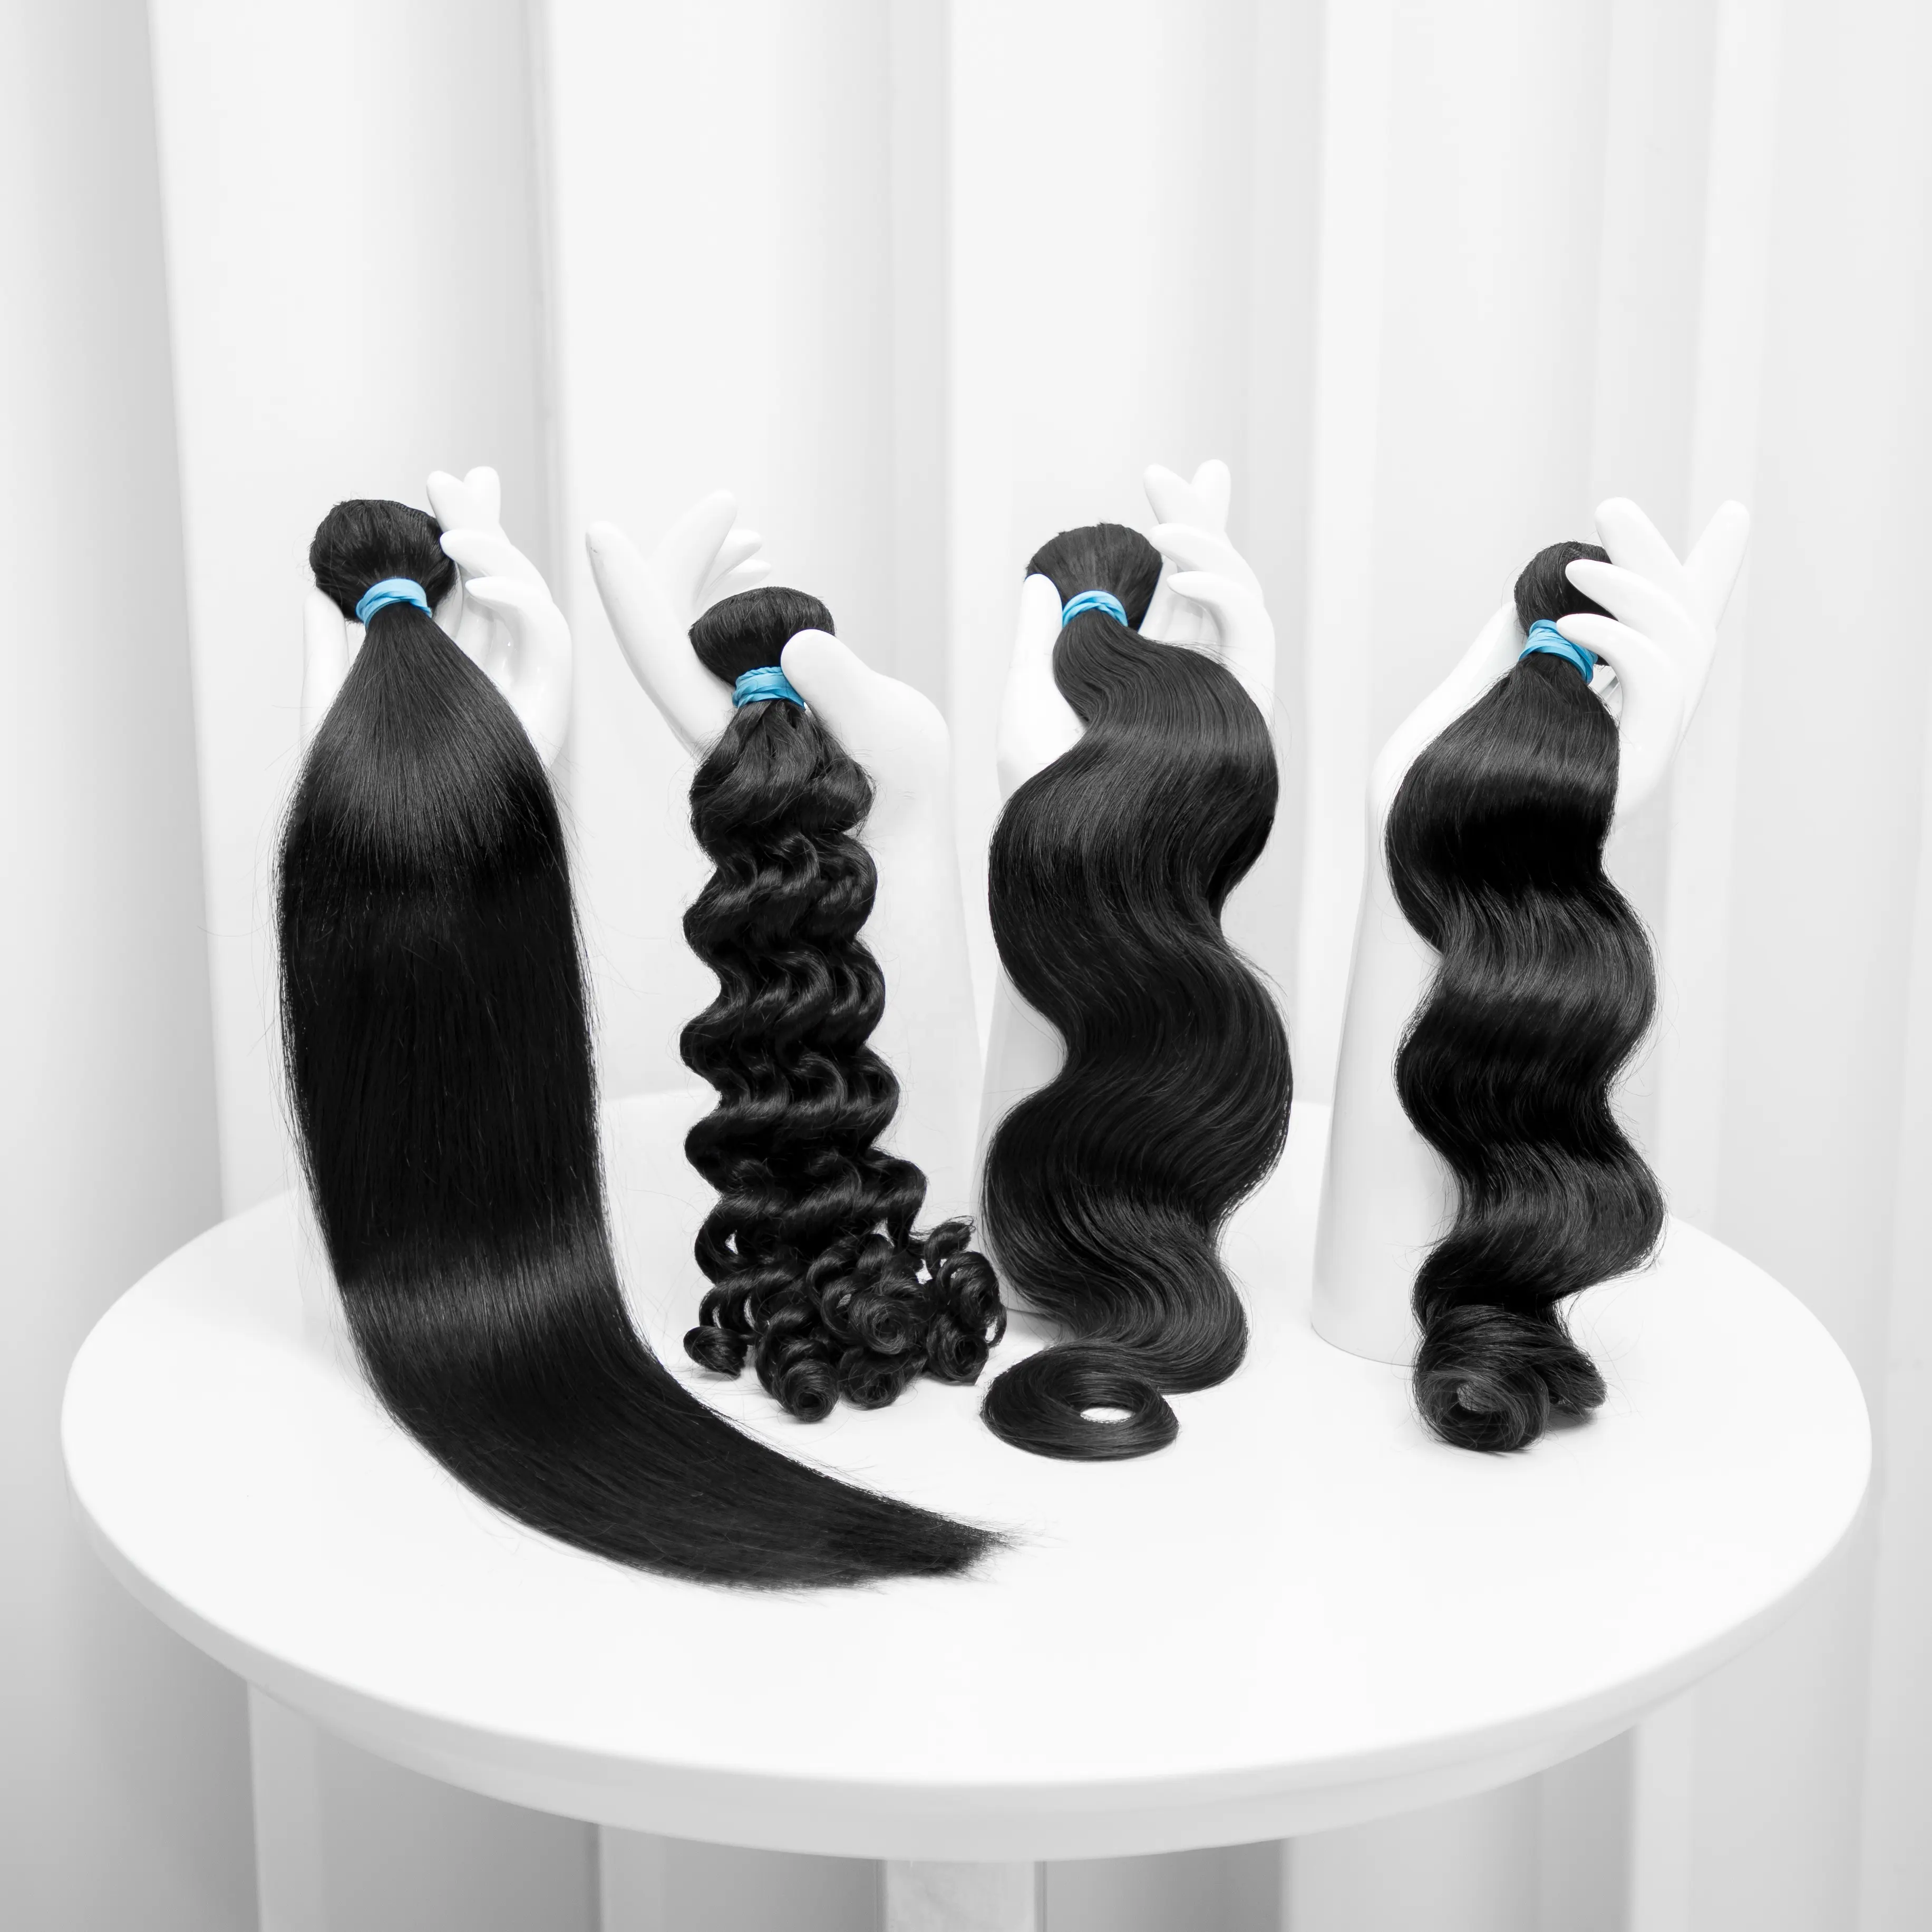 KBL reemplazo de cabello de visón precio Virgen por kg de cabello, 27 piezas de cabello humano tejido prótesis de cabello de alta calidad, su propio cabello de marca